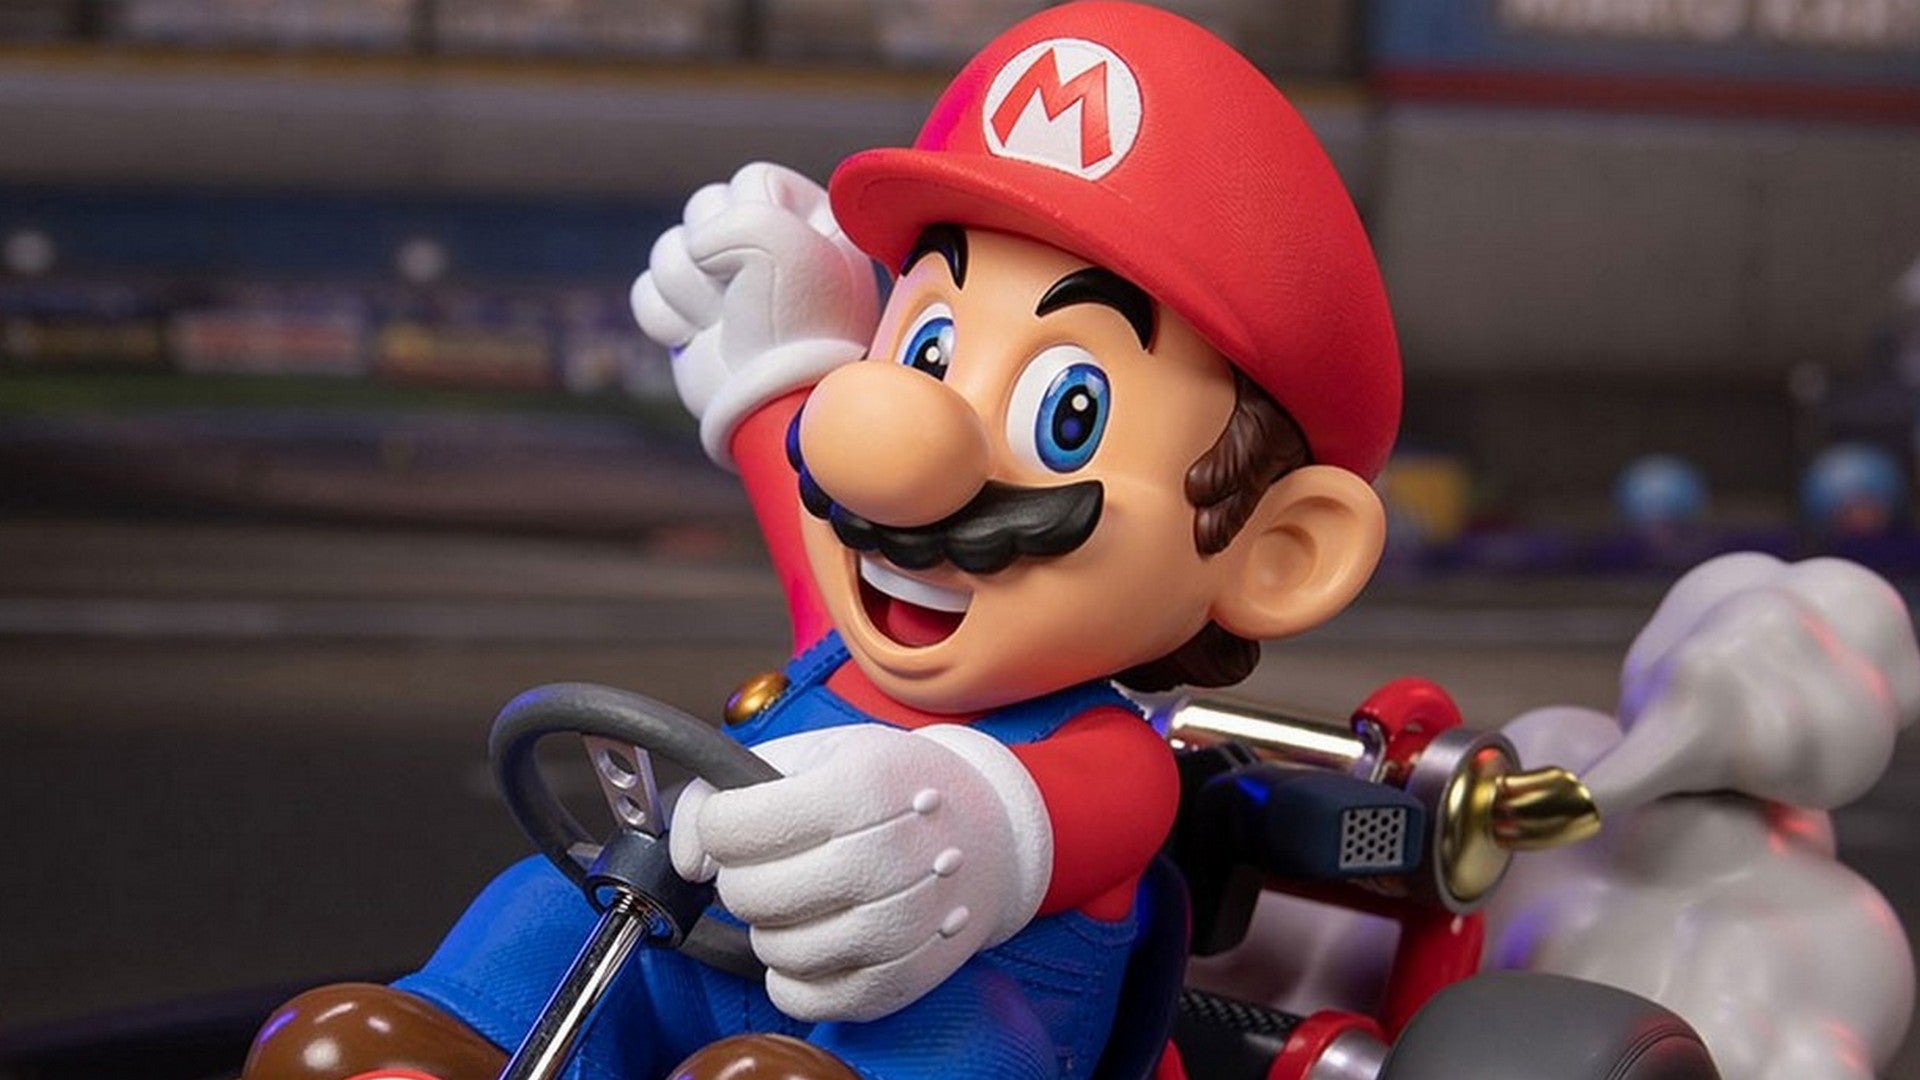 Diese fantastische Mario Kart Statue könnt ihr jetzt vorbestellen.